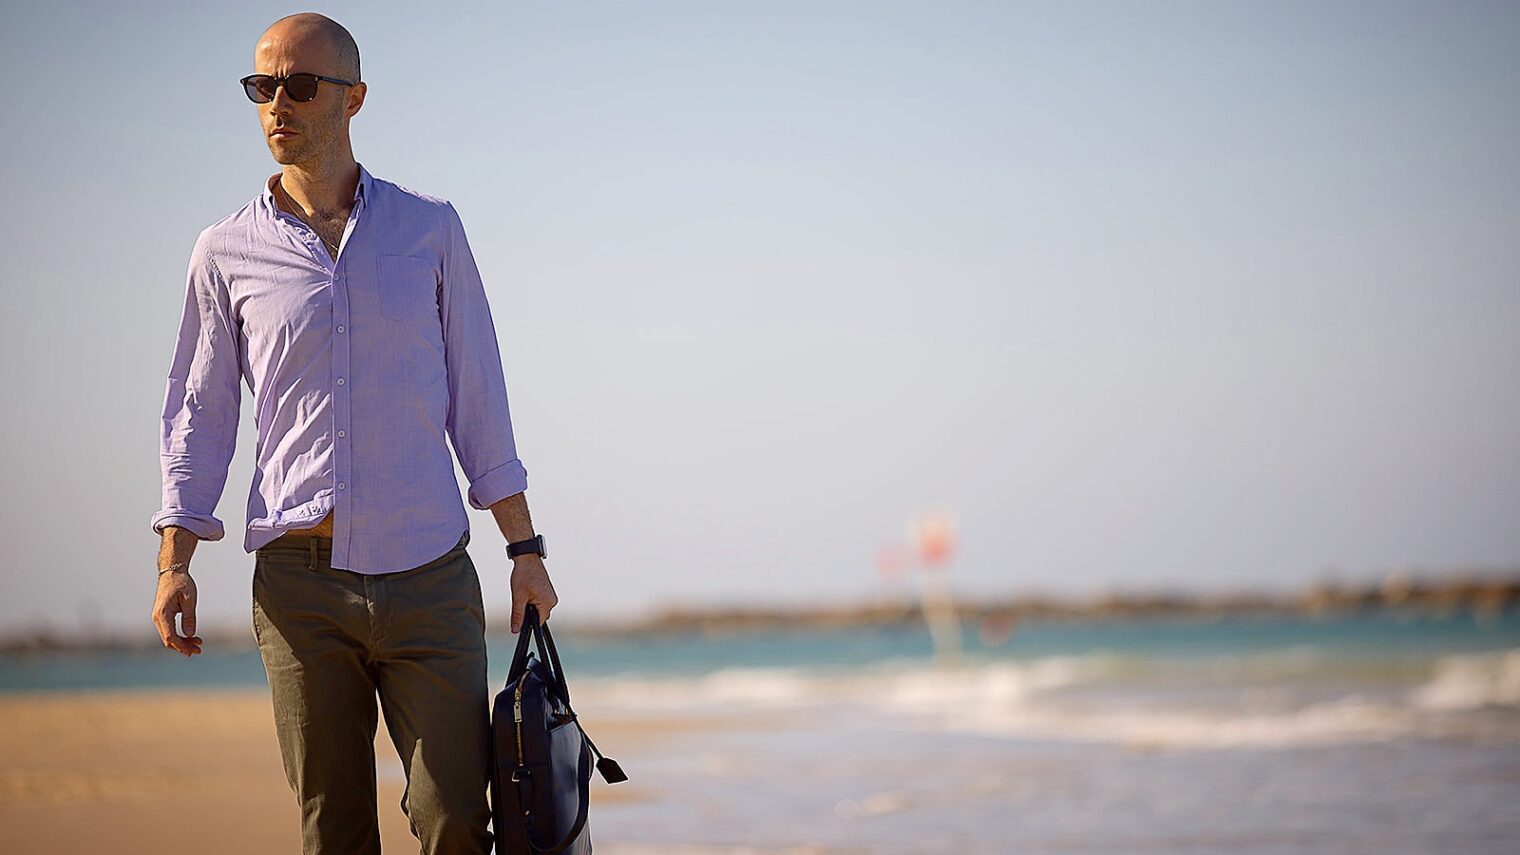 Kenneth Gotlib on the beach in Tel Aviv. Photo by Tomer Rahmani